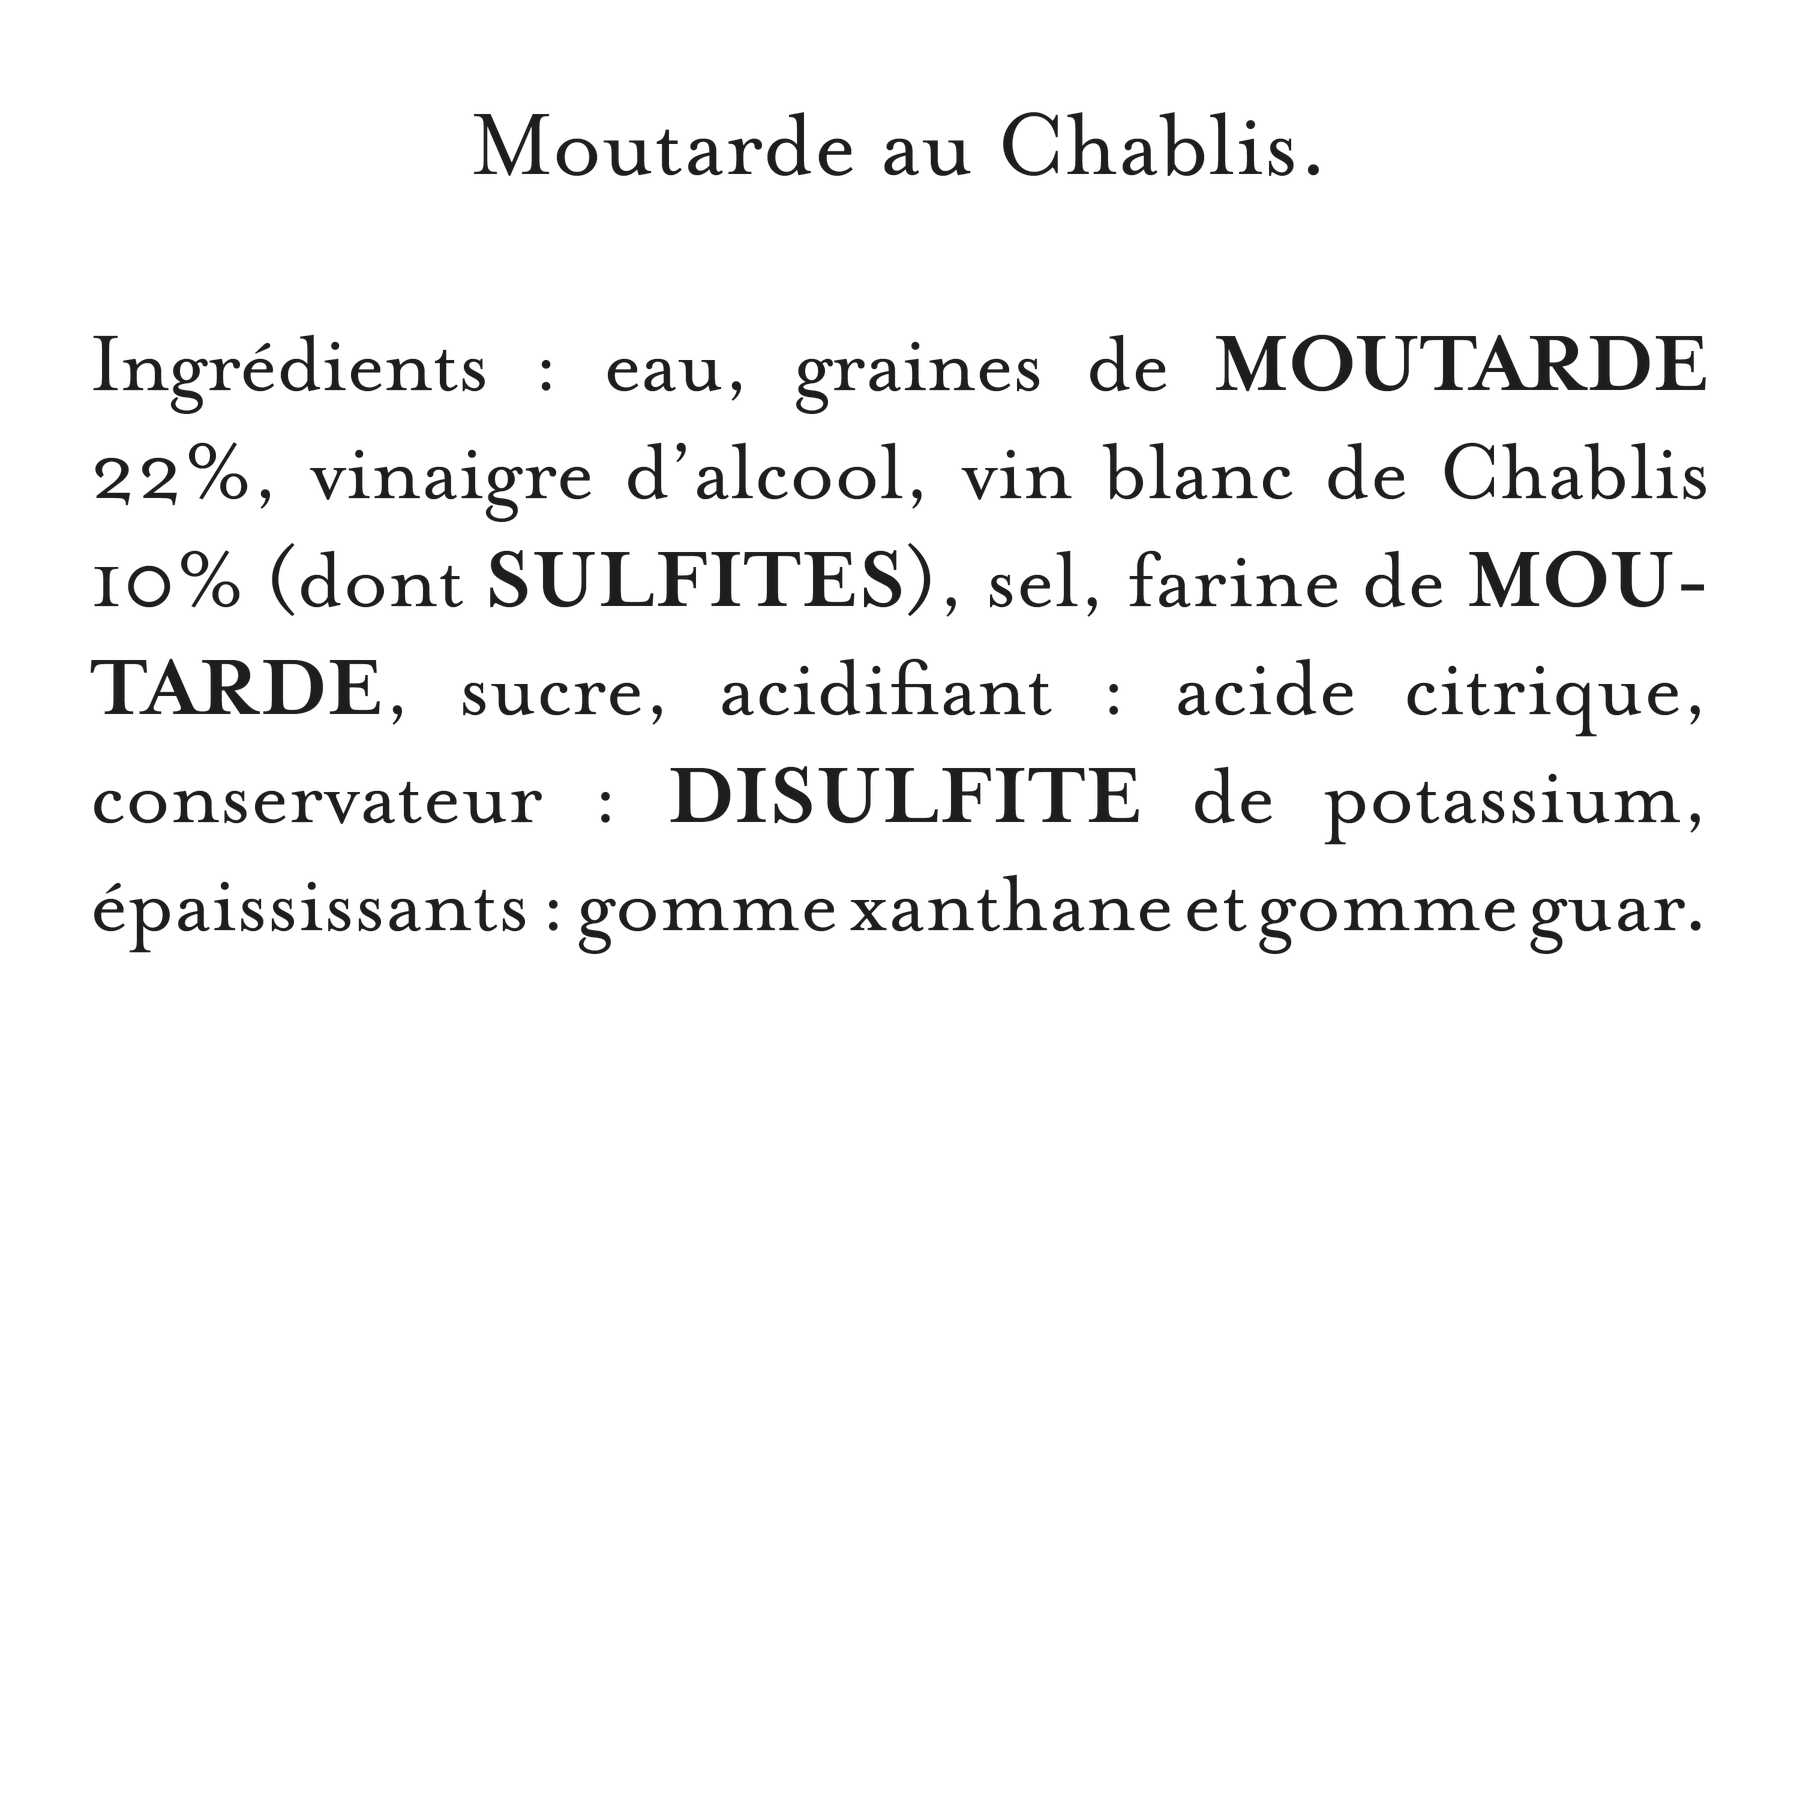 Maille - Moutarde au chablis servie a la pompe, liste d'ingrédients